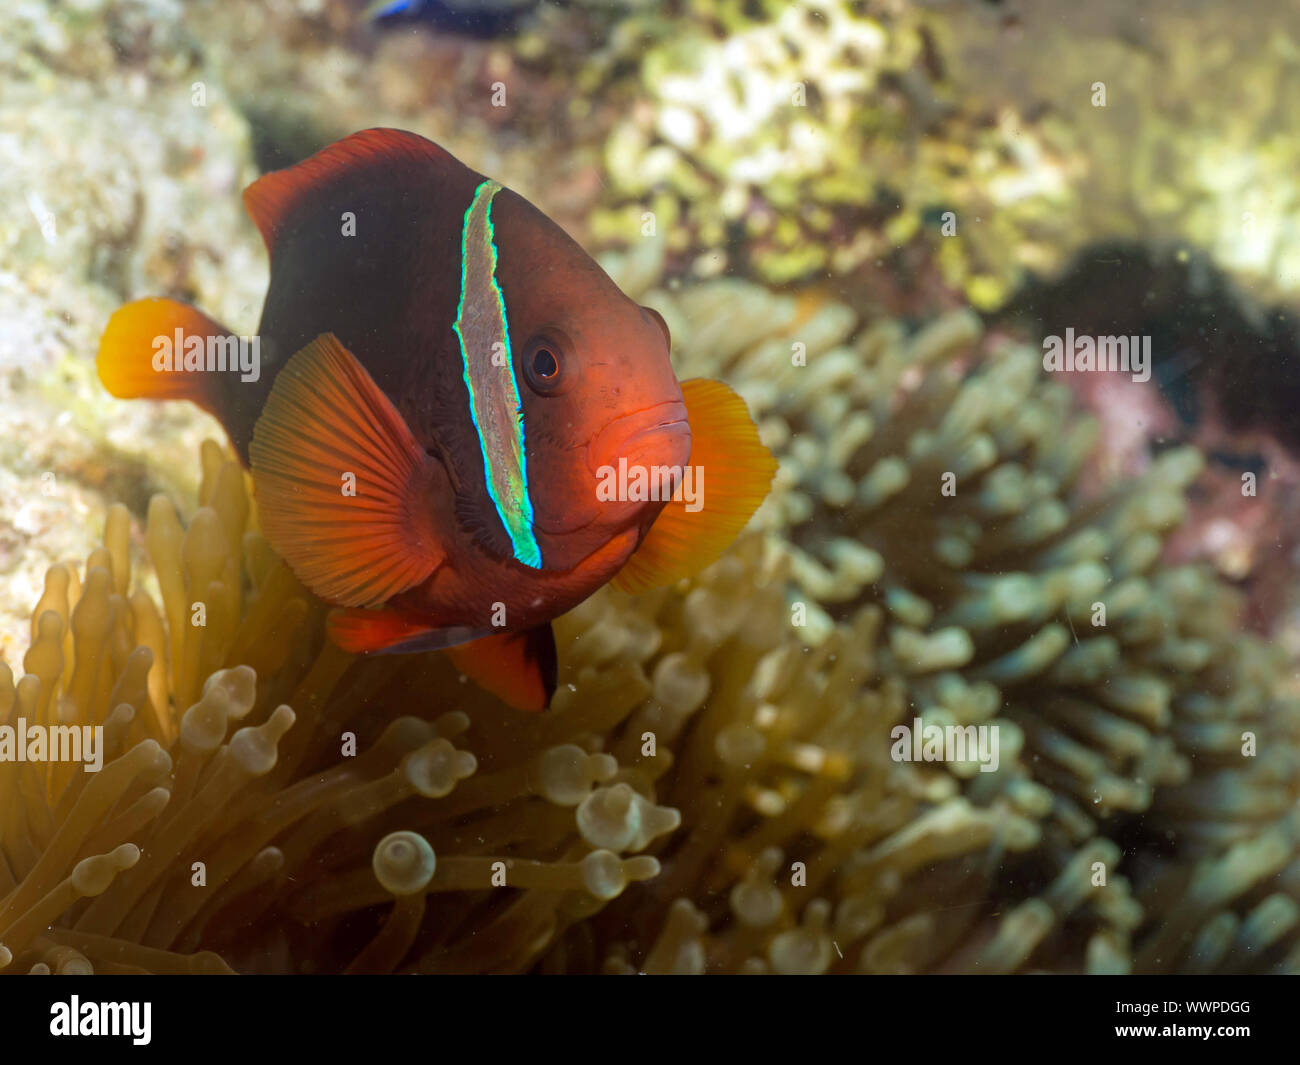 Tomato clownfish Stock Photo